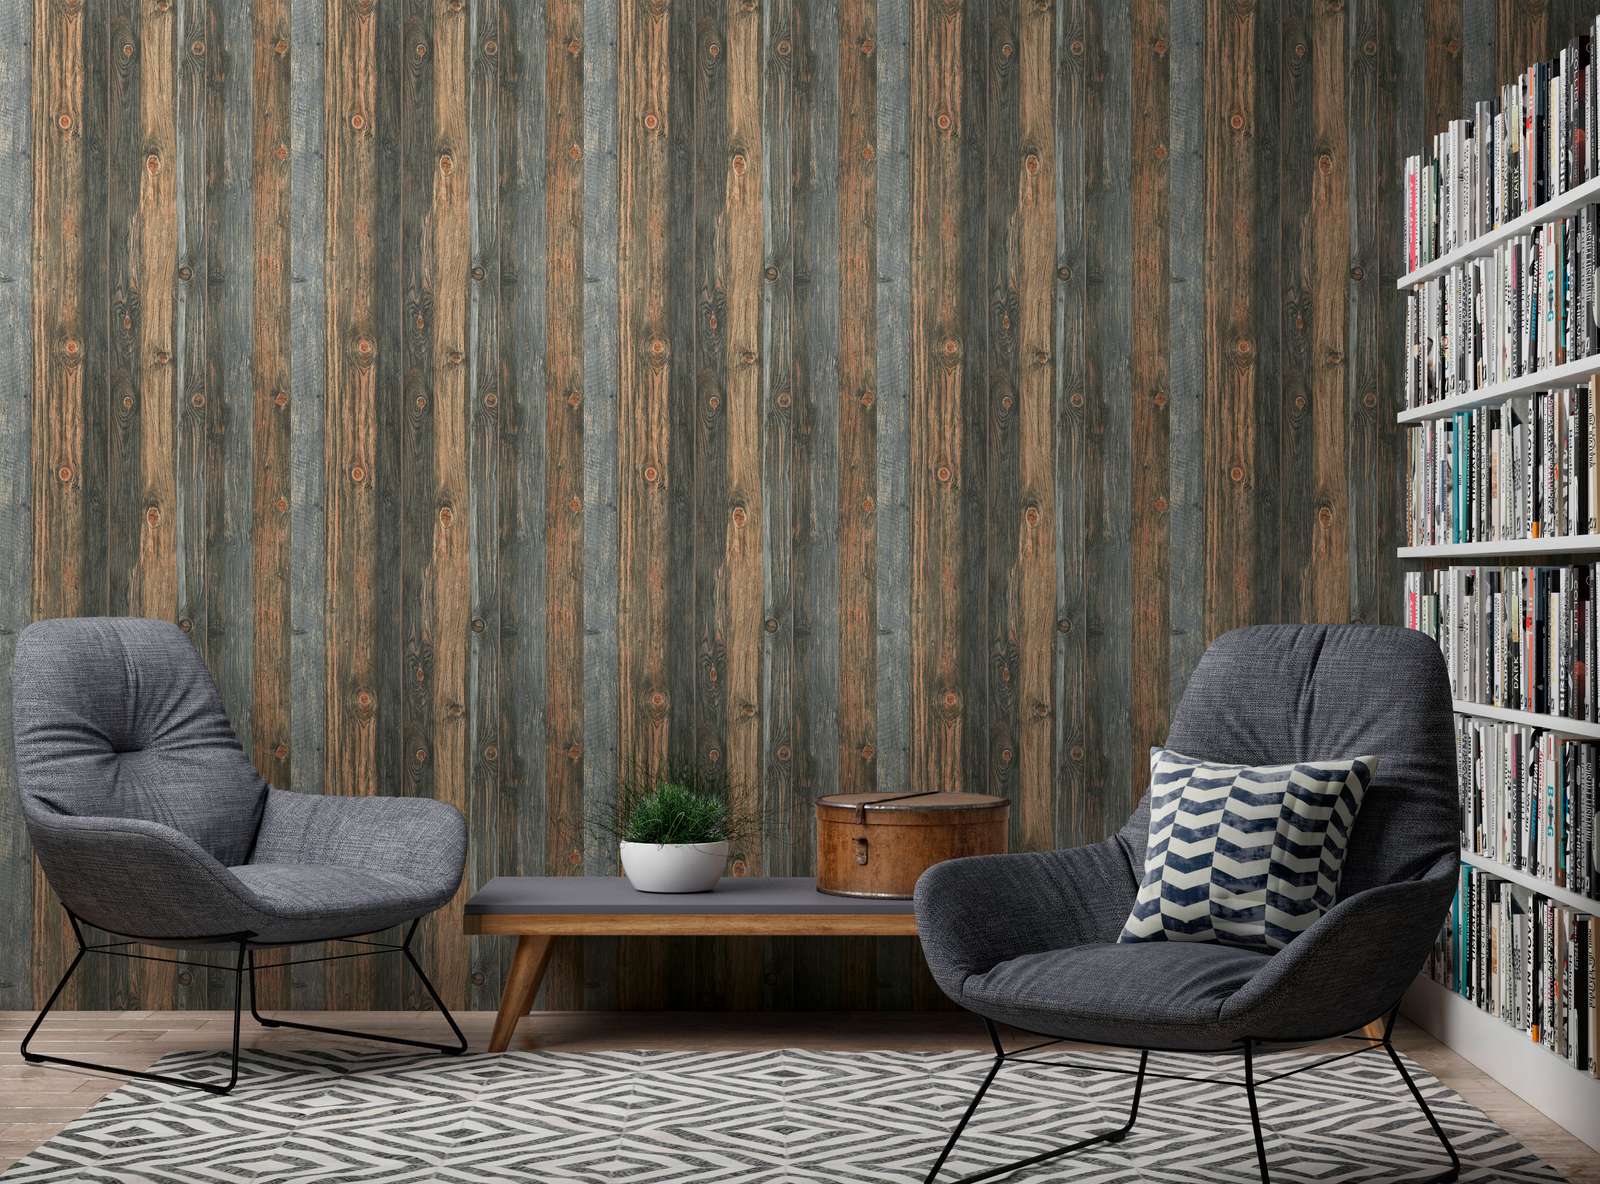             Wooden wallpaper with boards motif, wood texture & grain - brown, grey, beige
        